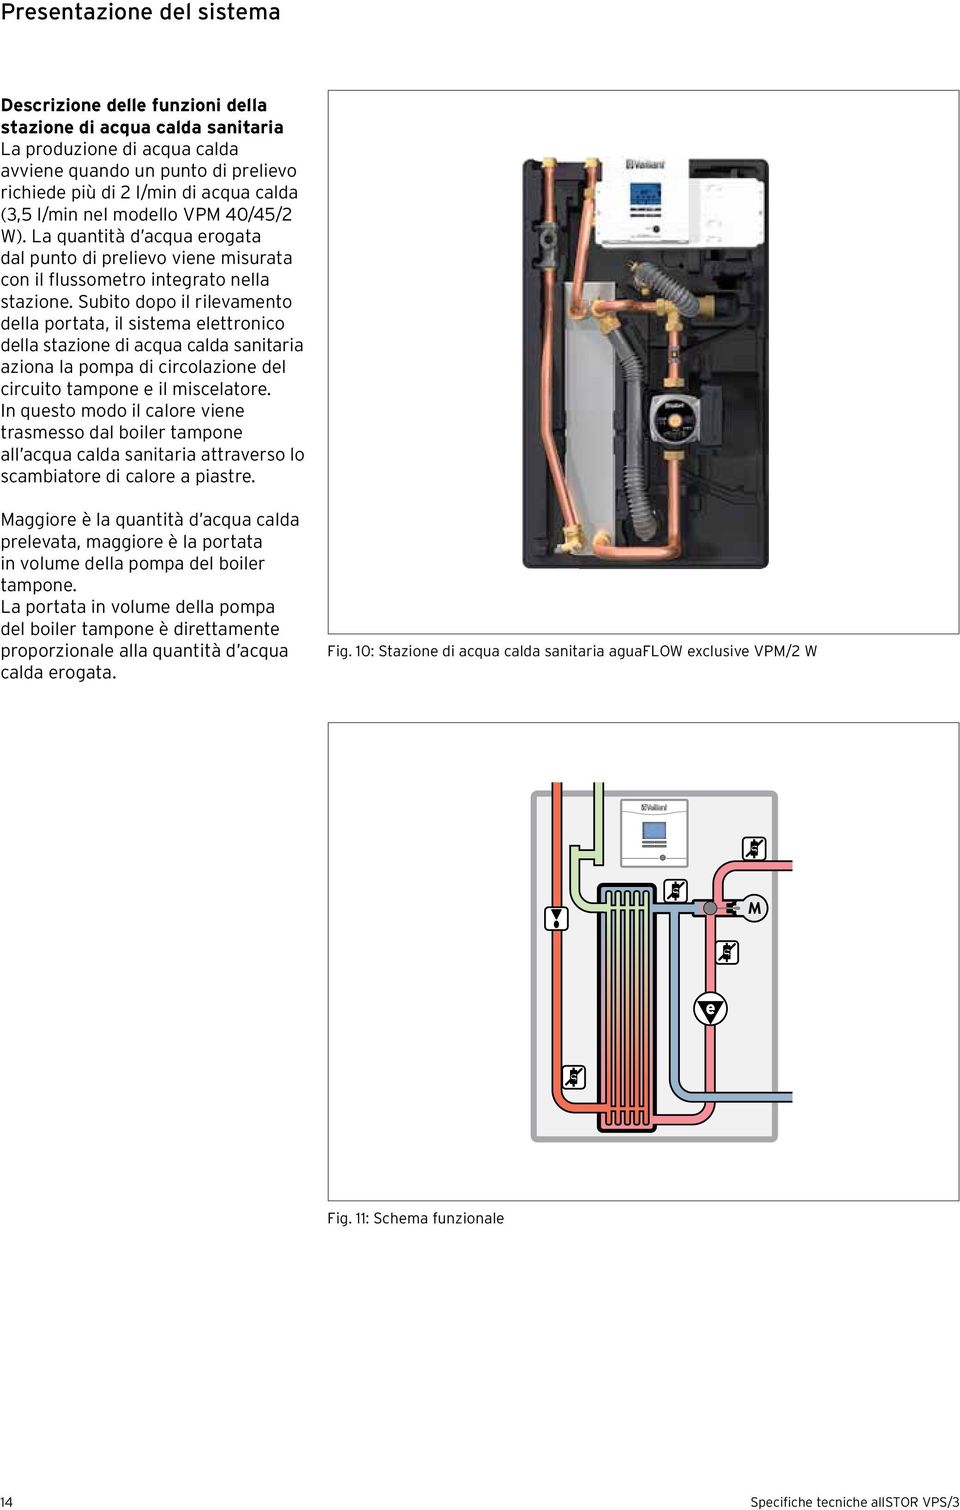 Subito dopo il rilevamento della portata, il sistema elettronico della stazione di acqua calda sanitaria aziona la pompa di circolazione del circuito tampone e il miscelatore.